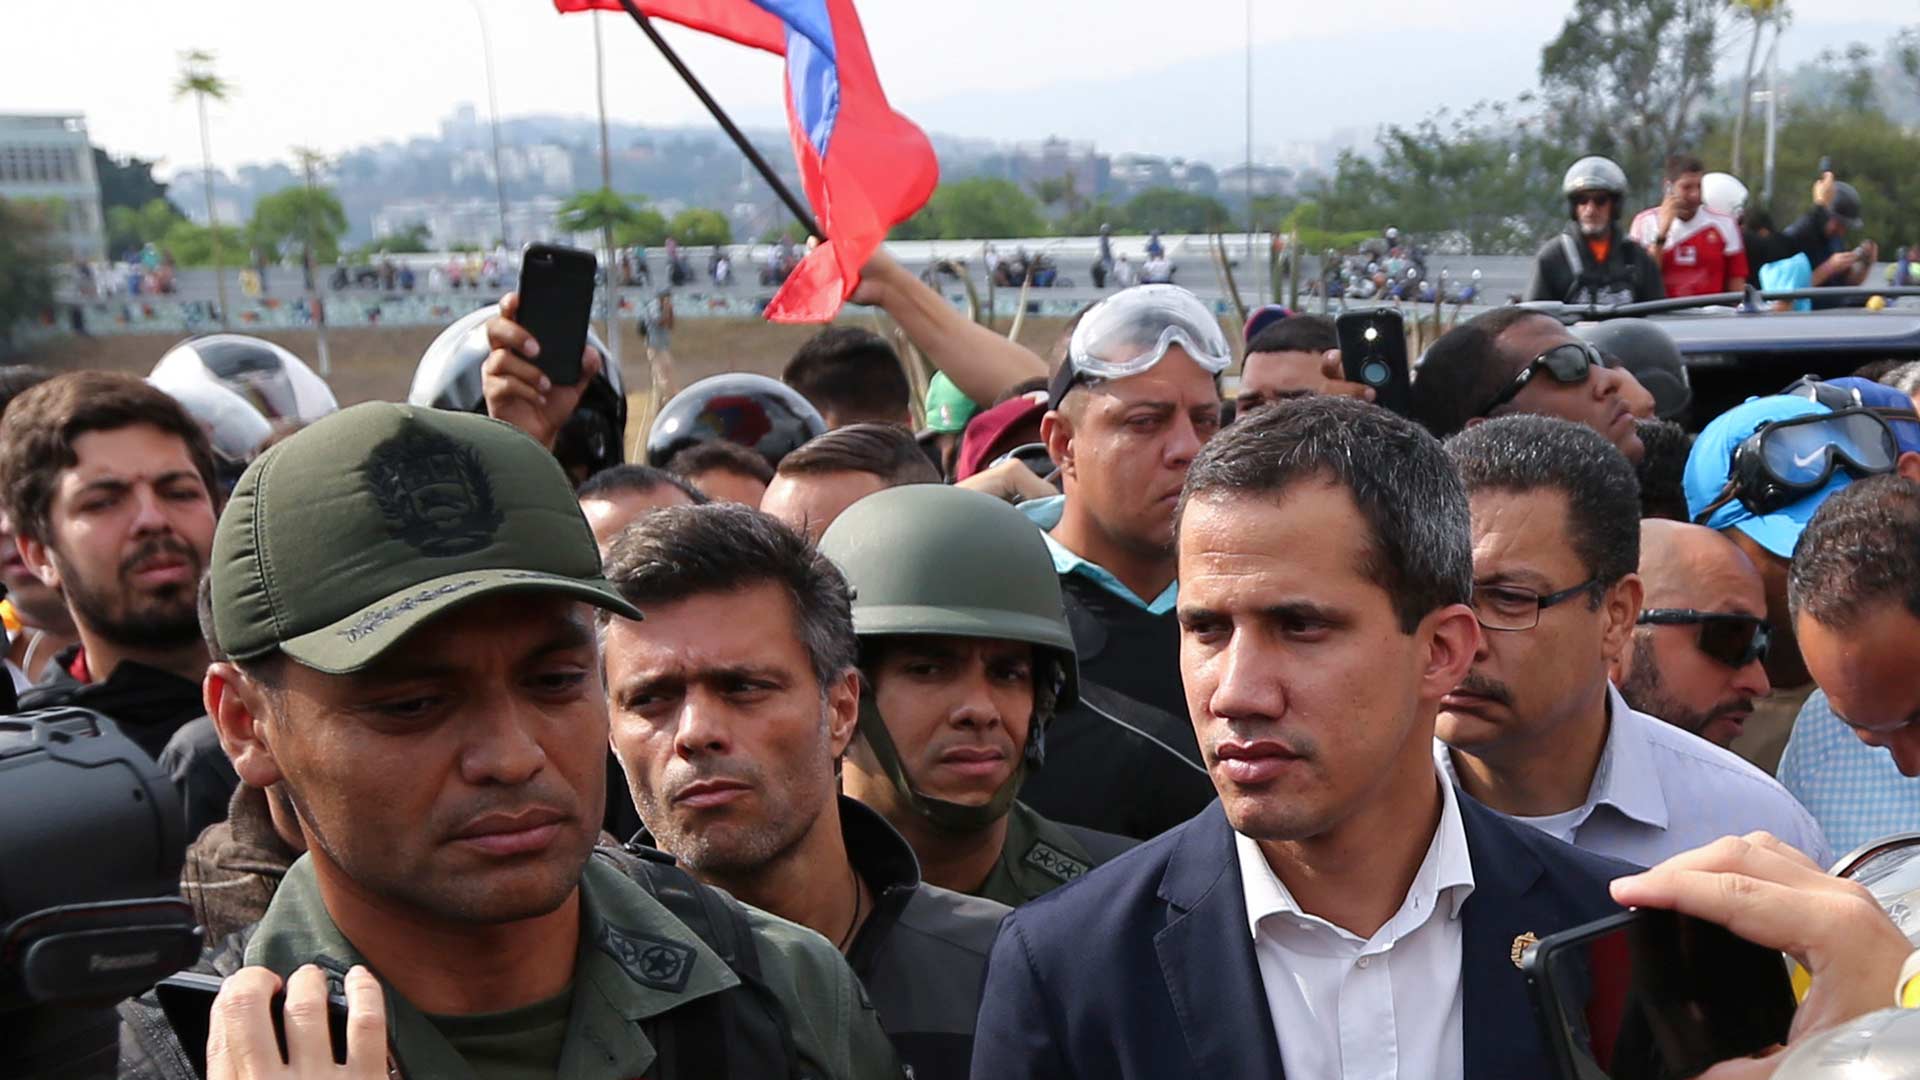 En menos de un minuto: Guaidó libera a Leopoldo López y Casado define a Vox como "extrema derecha"